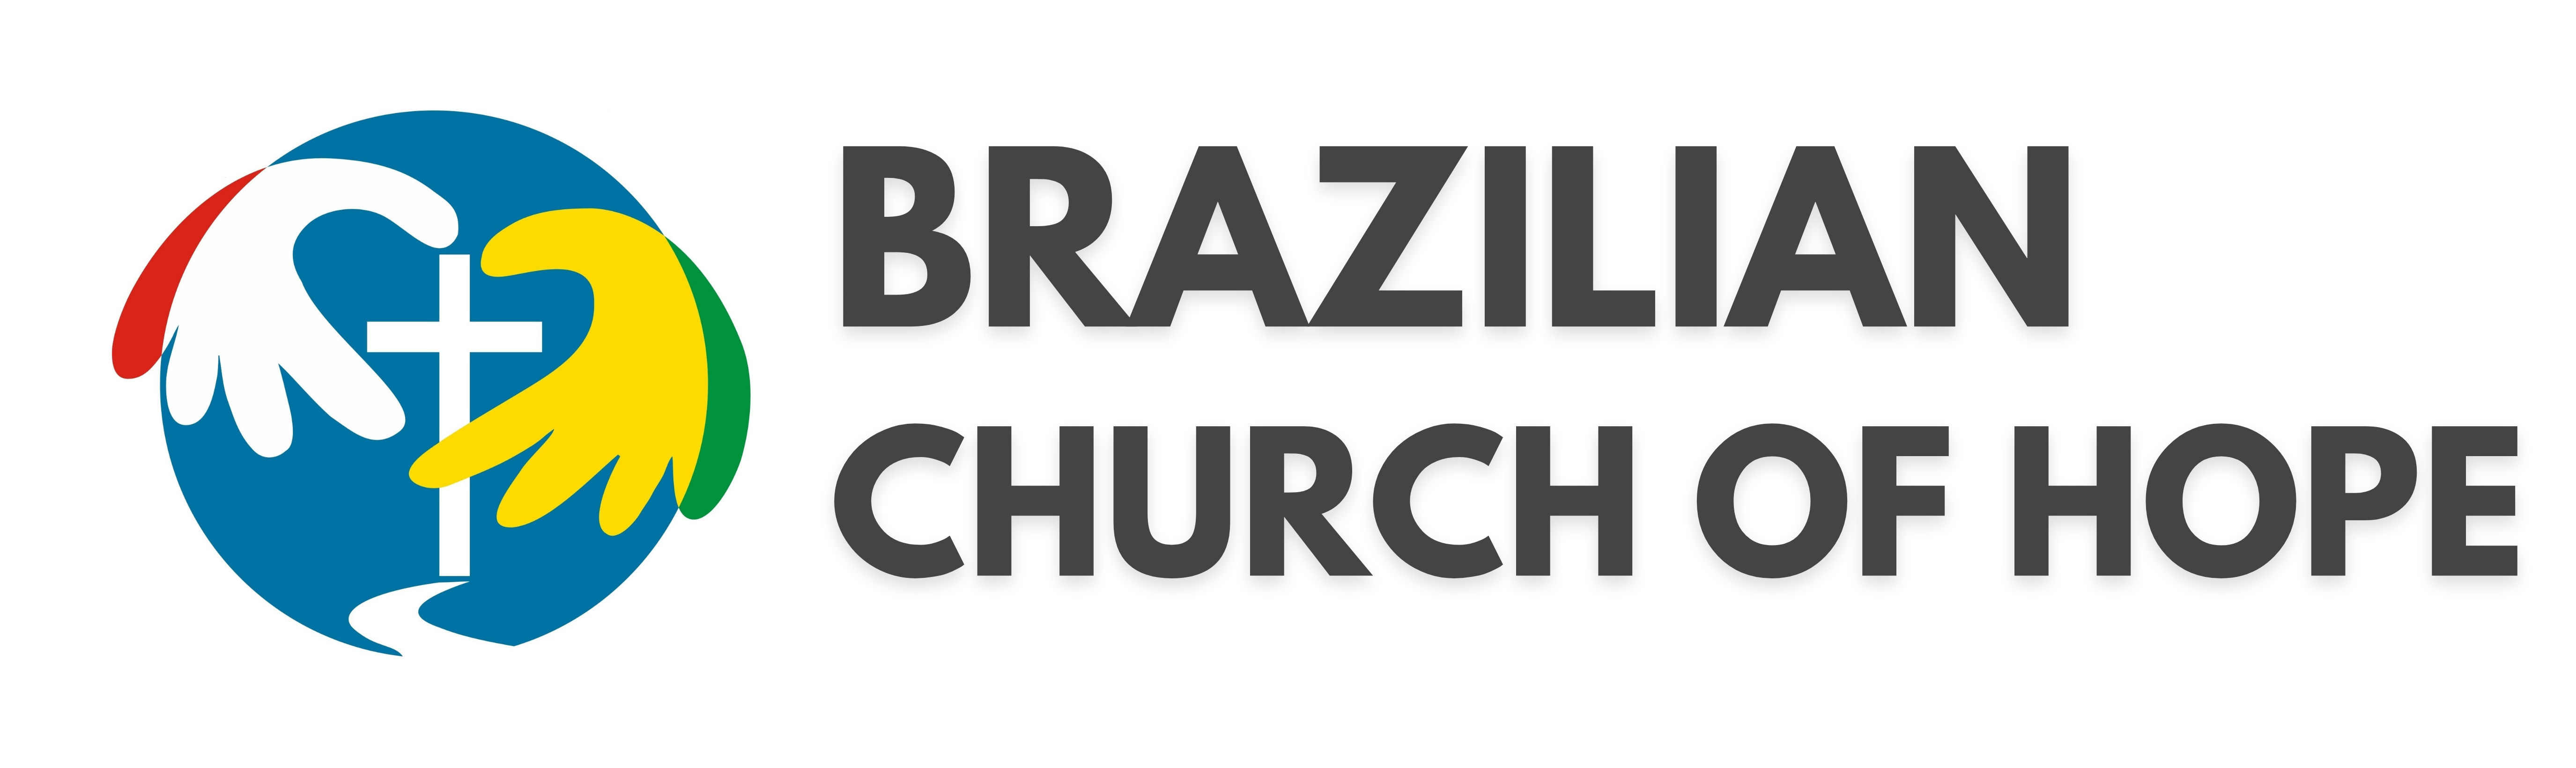 Igreja Brasileira da Esperança